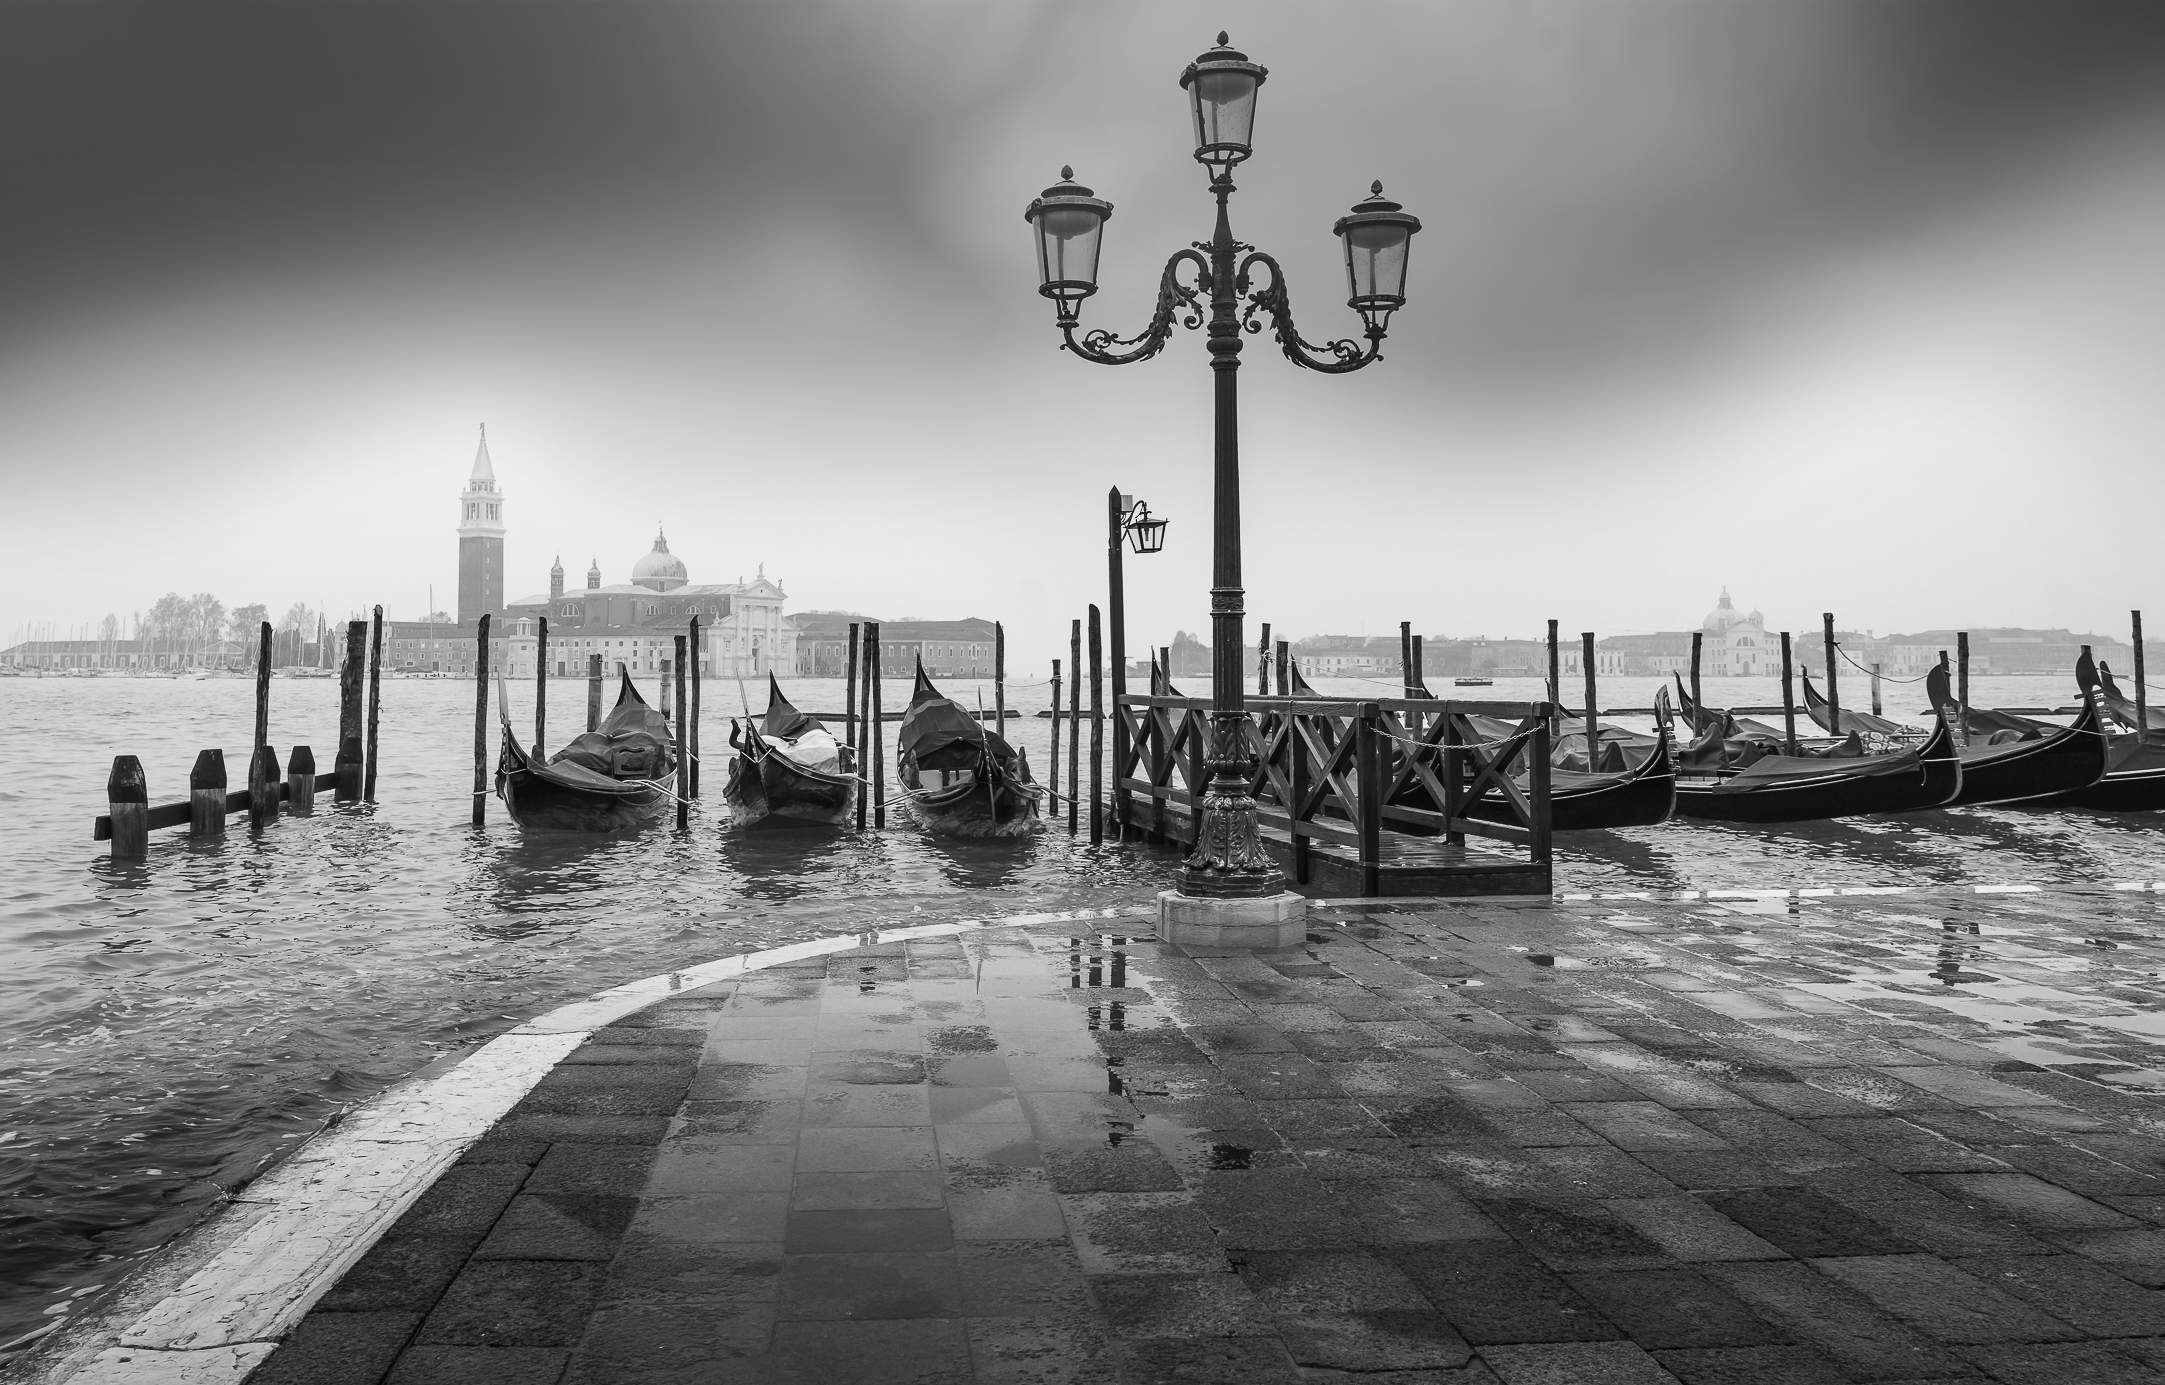 Venedig zur Zeit der "acqua alta" zeigt die Morbidität und Vergänglichkeit dieser Stadt eindrücklich